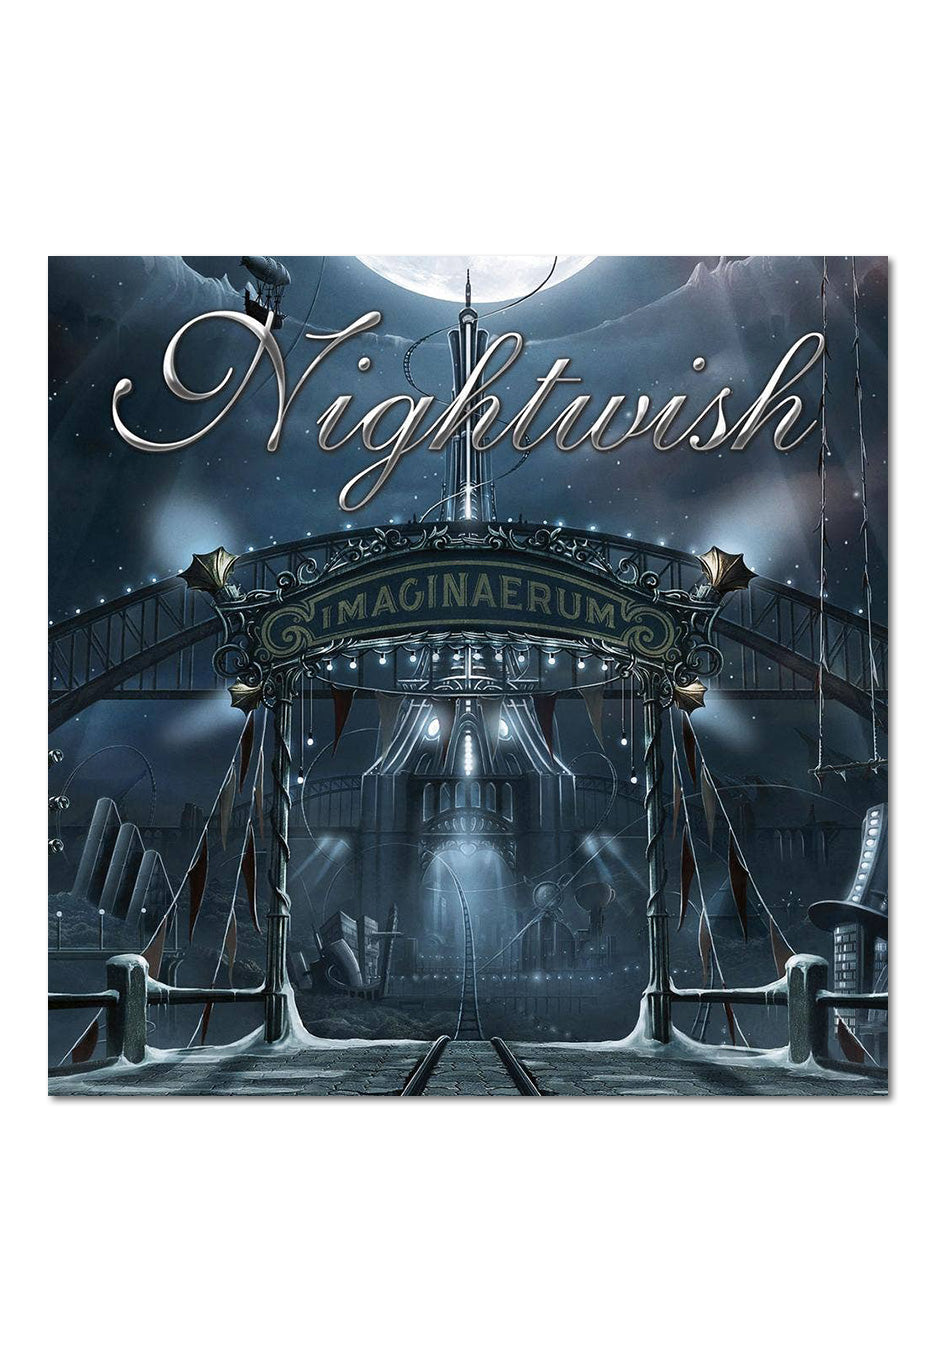 Nightwish - Imaginaerum - CD